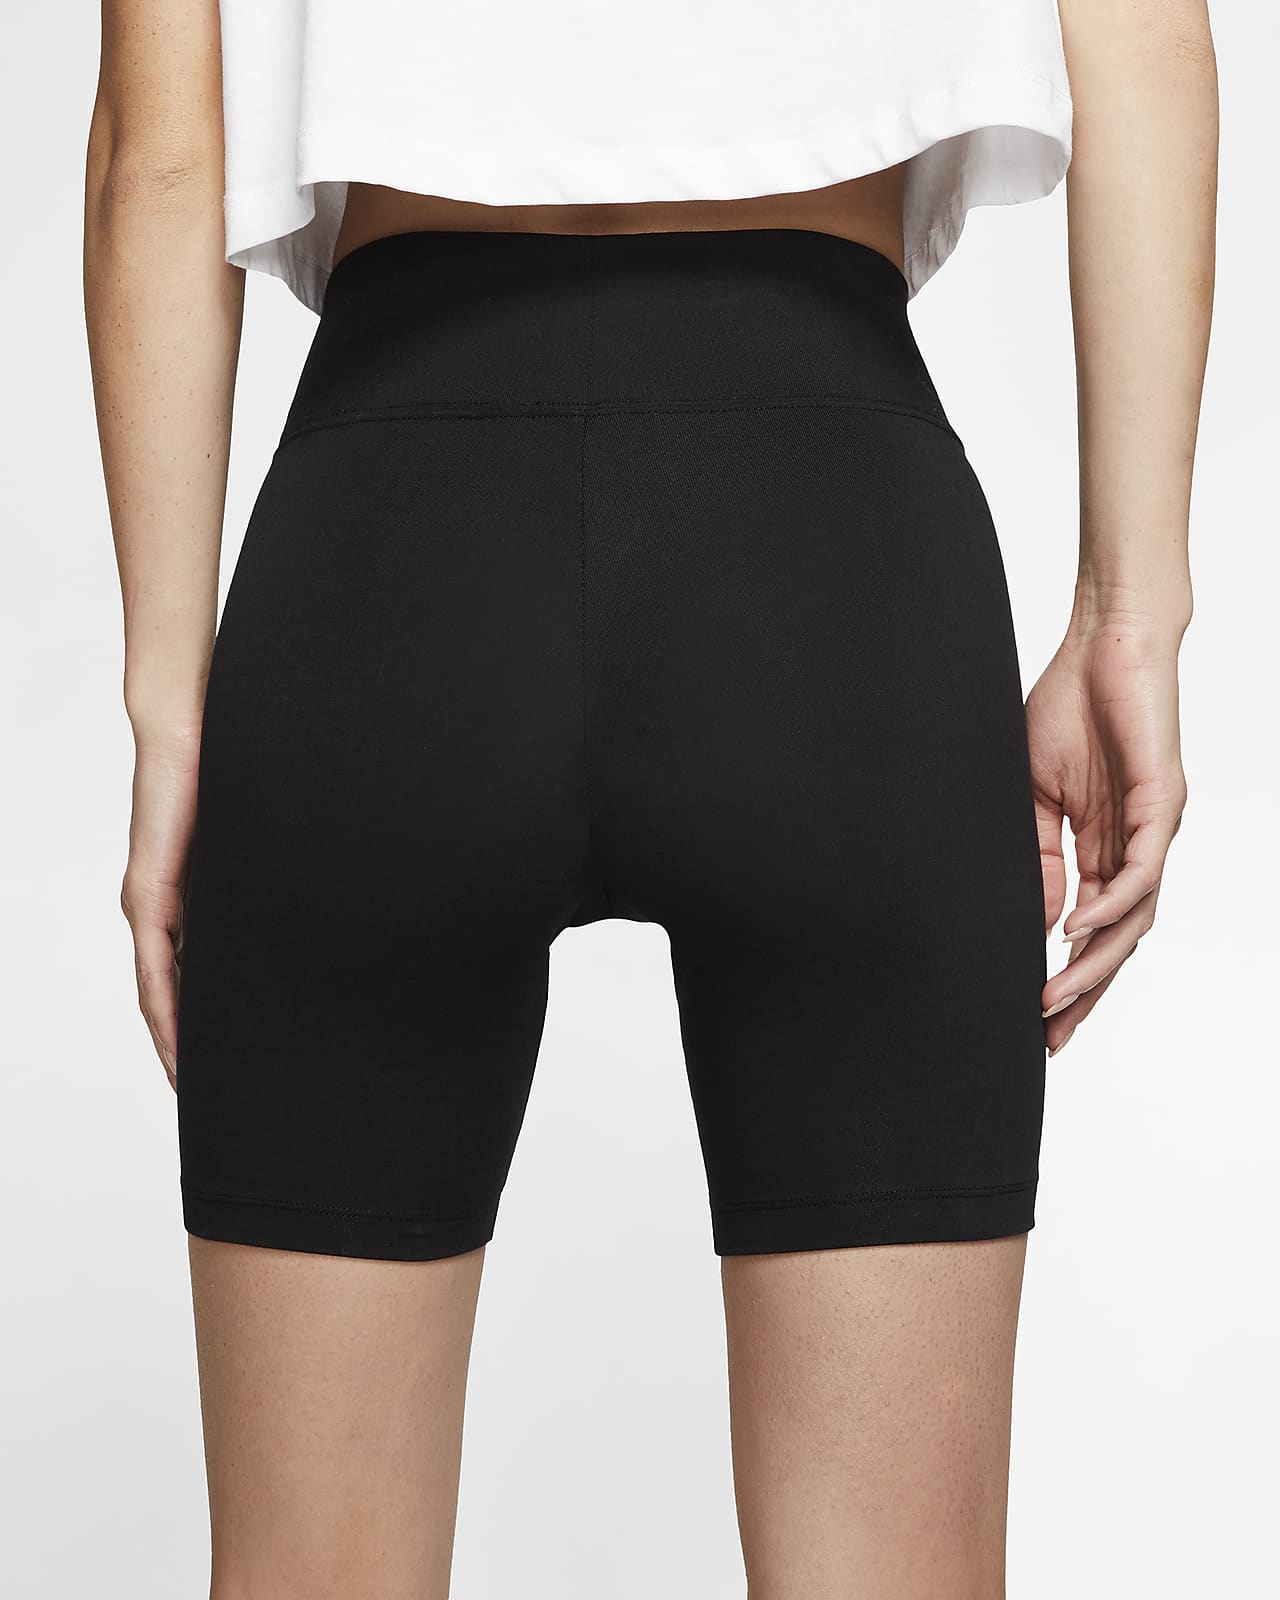 nike bike shorts for women